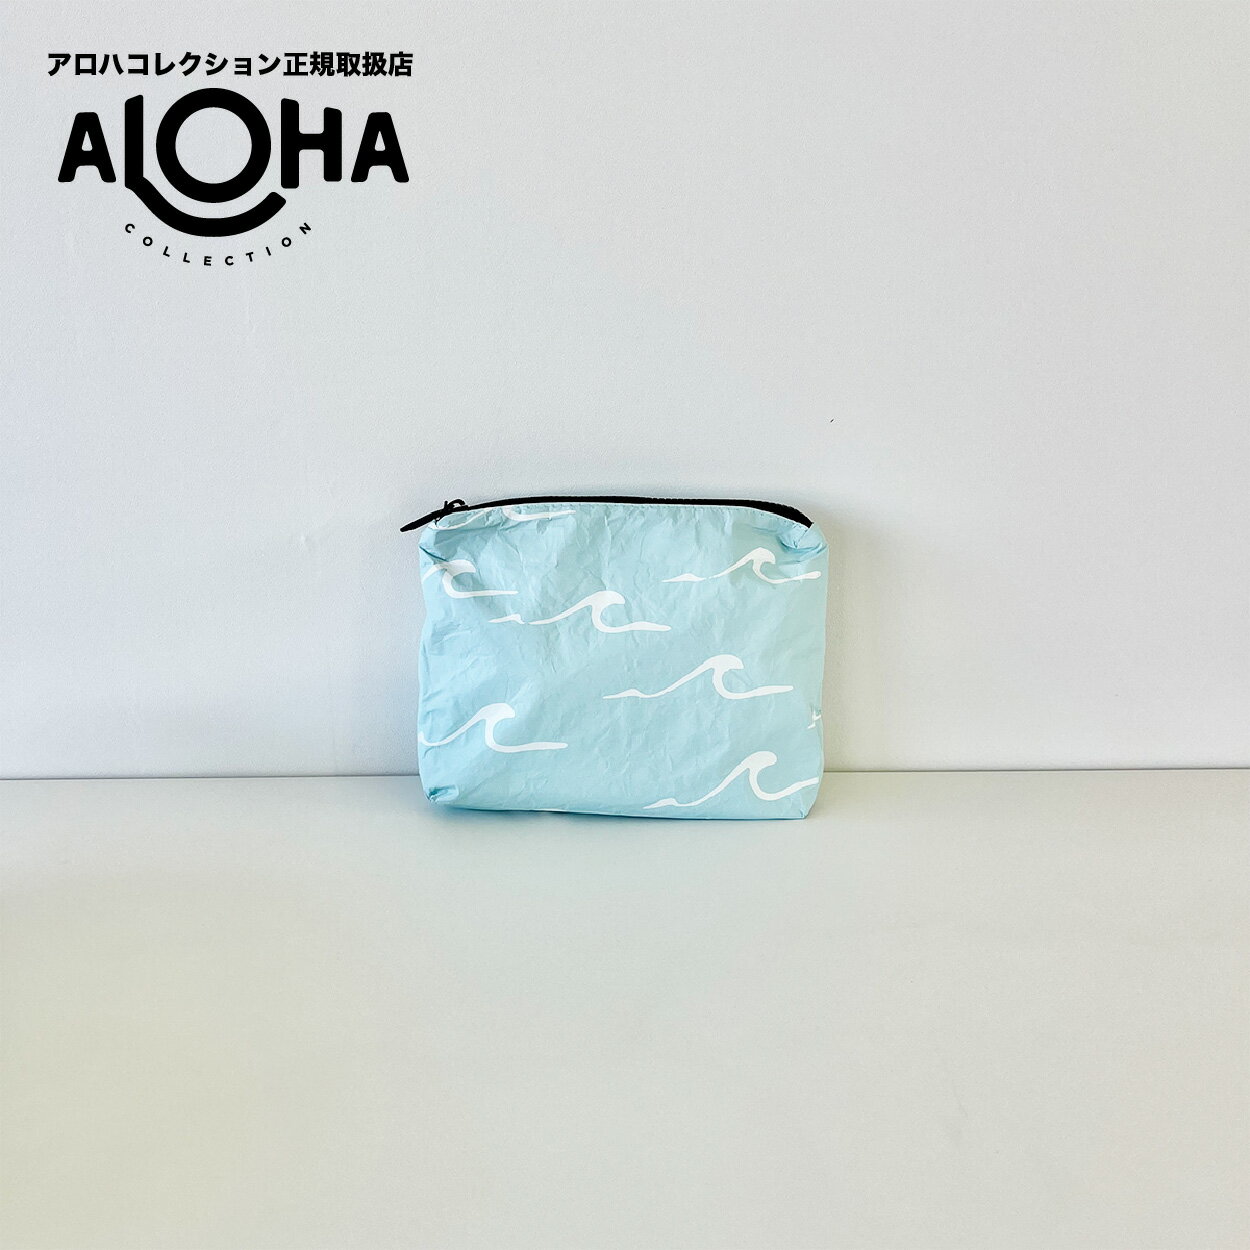 アロハコレクション aloha collection スモールポーチ Small Seaside, White on LeMU Blue 防水 ポーチ ヨガ サーフィン 丸洗い可能 ハワイ SMA35301-0301